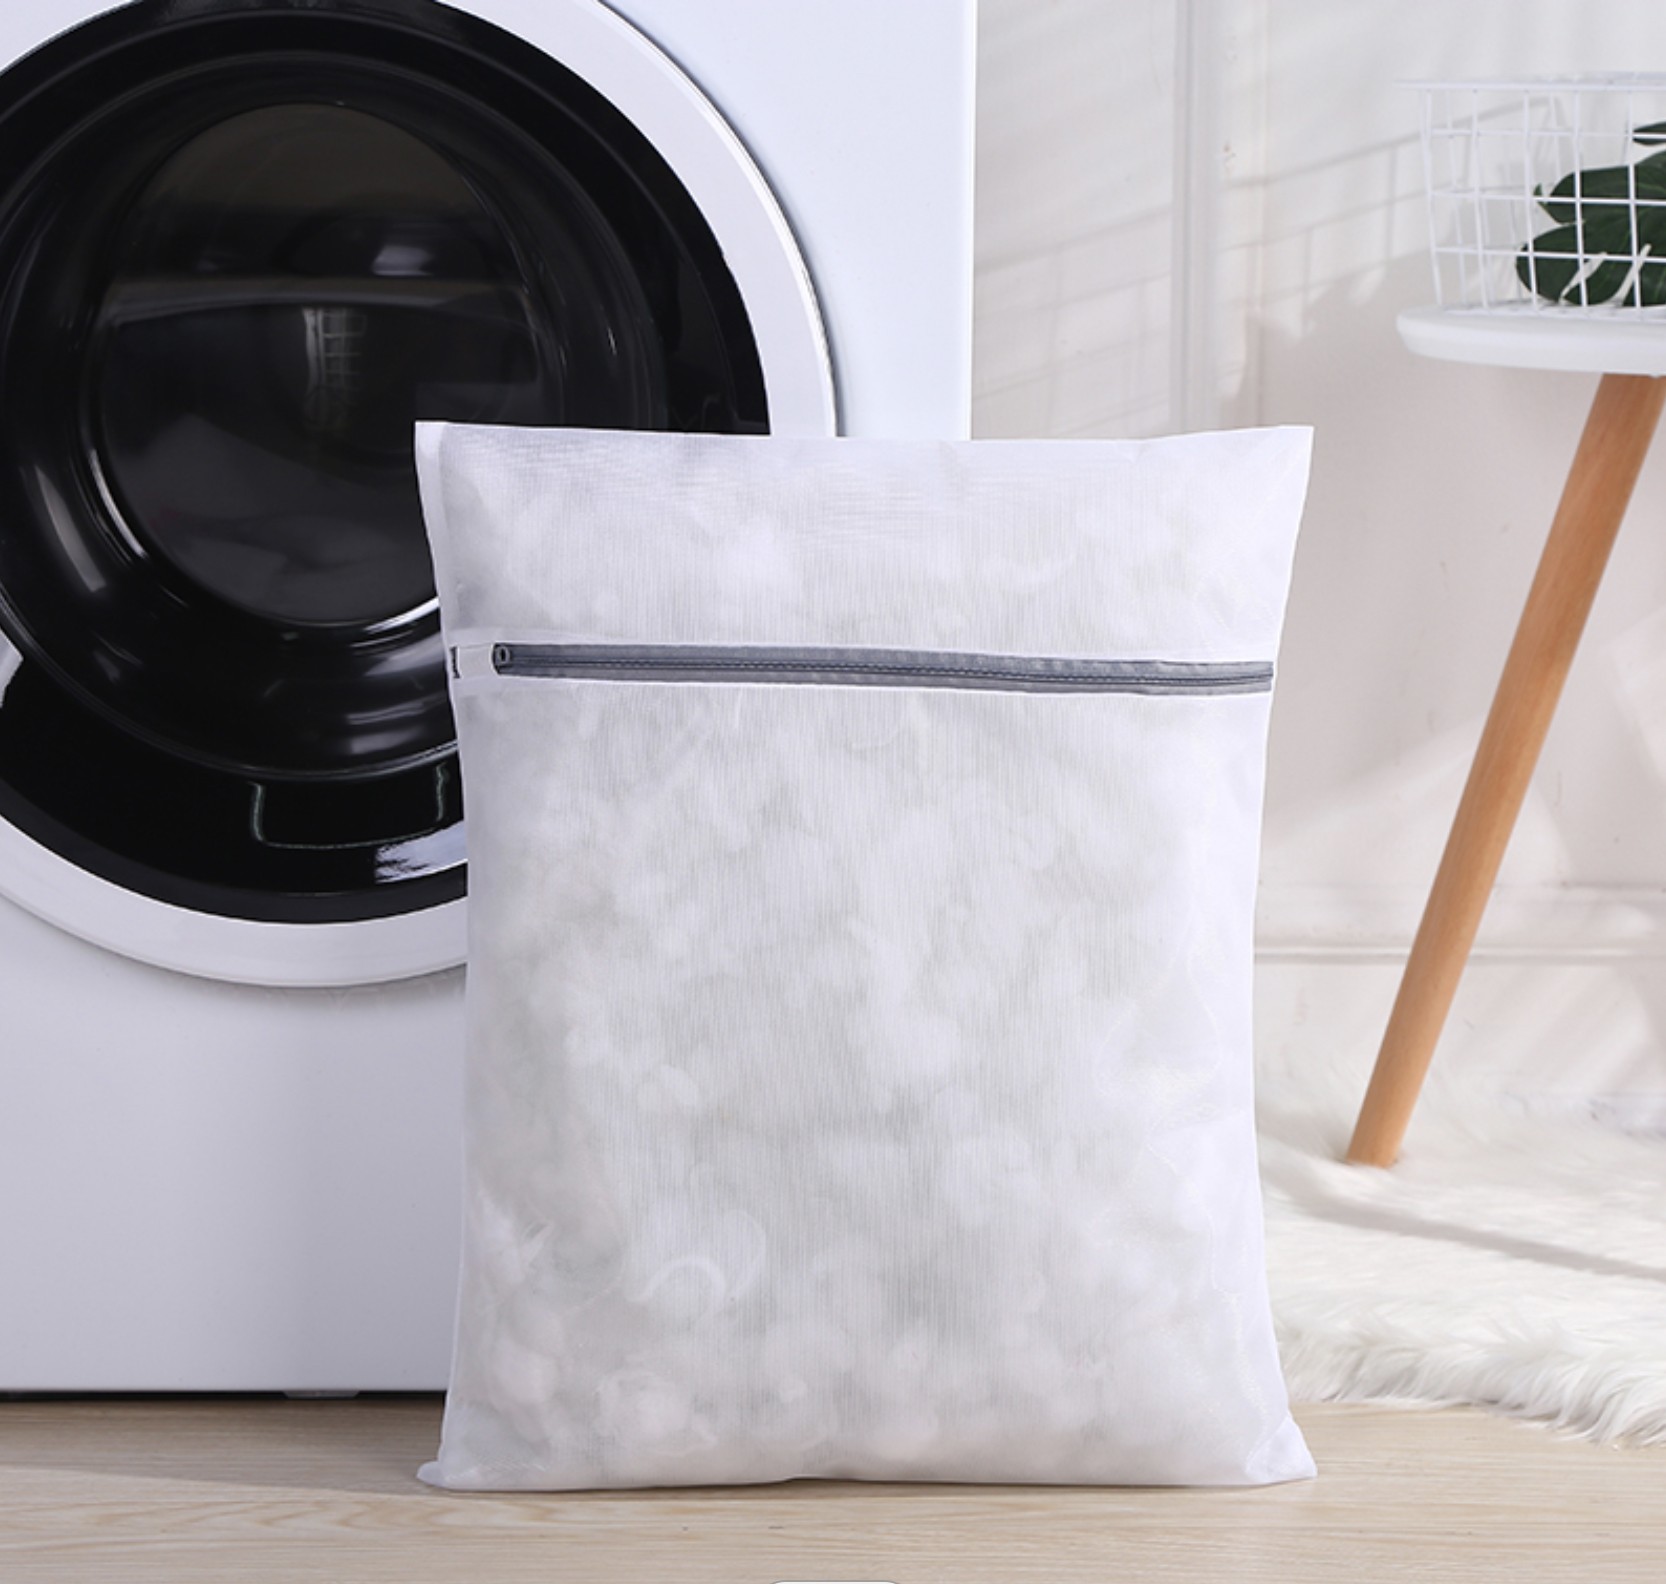 5-Set sacchetti lavatrice biancheria, Sacchetto Rete Lavatrice per